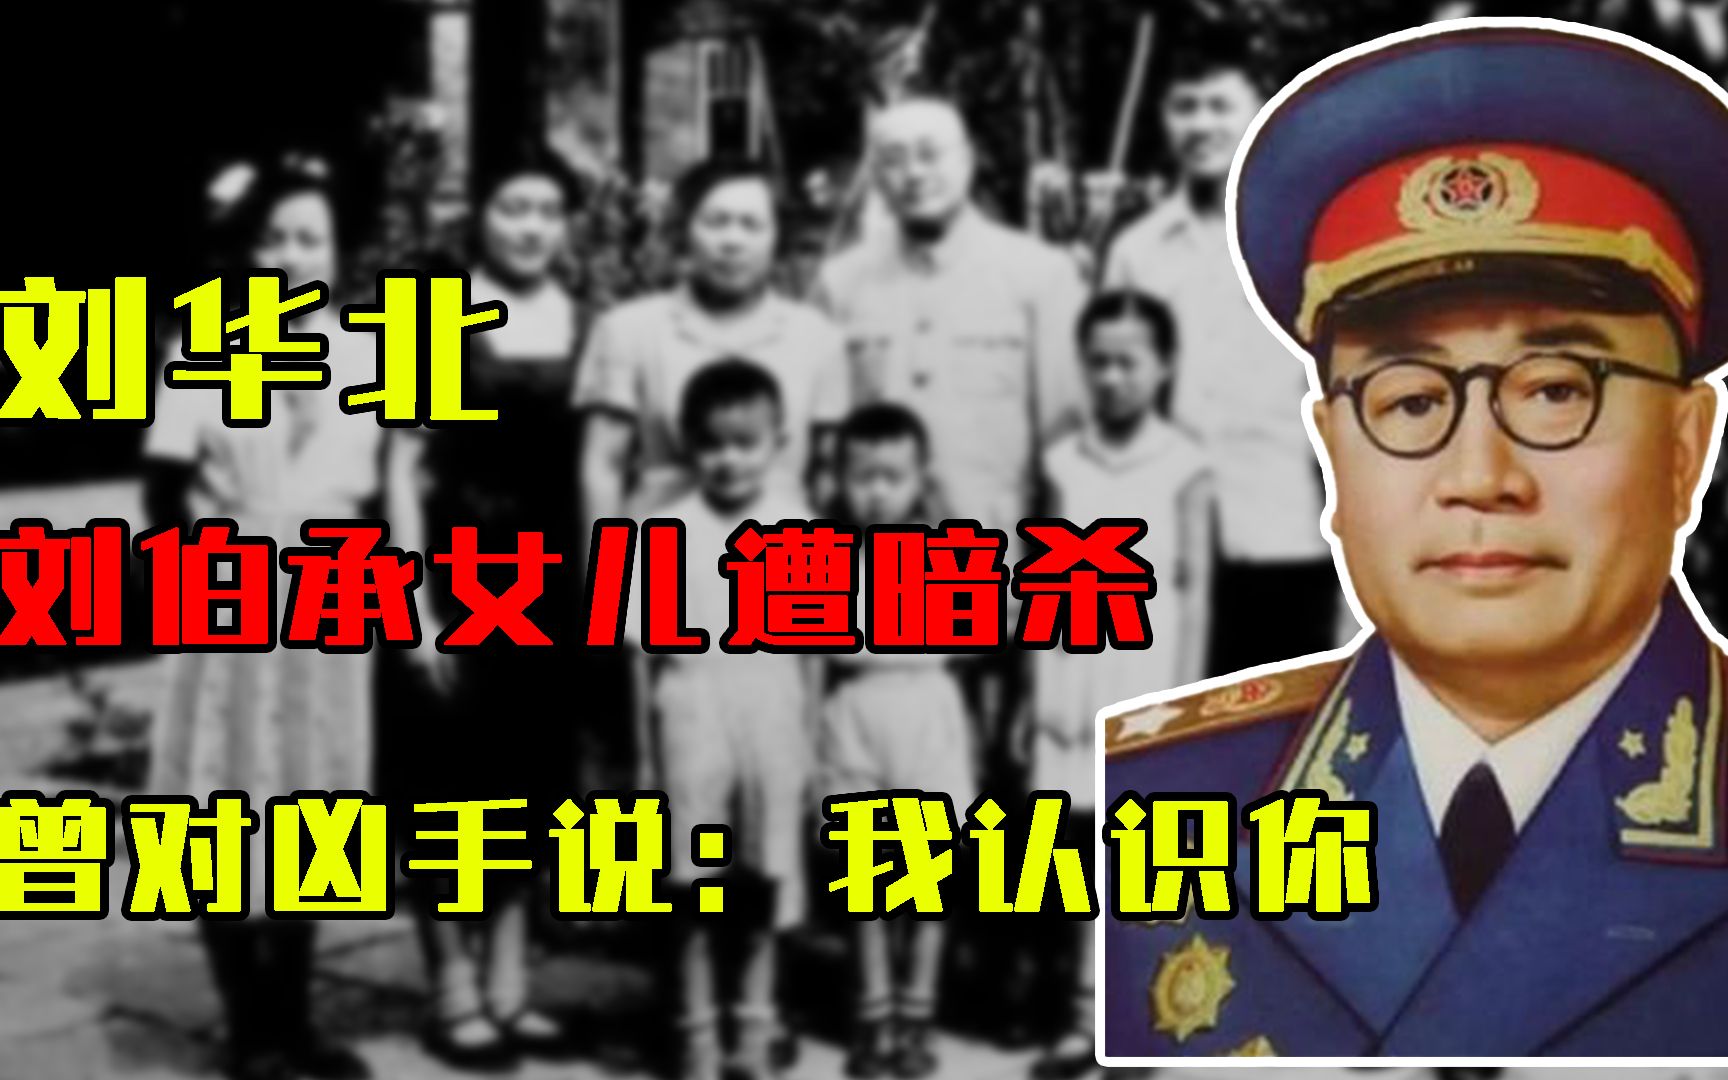 1945年，刘伯承6岁女儿遭暗杀，死前曾对凶手说：叔叔我认识你